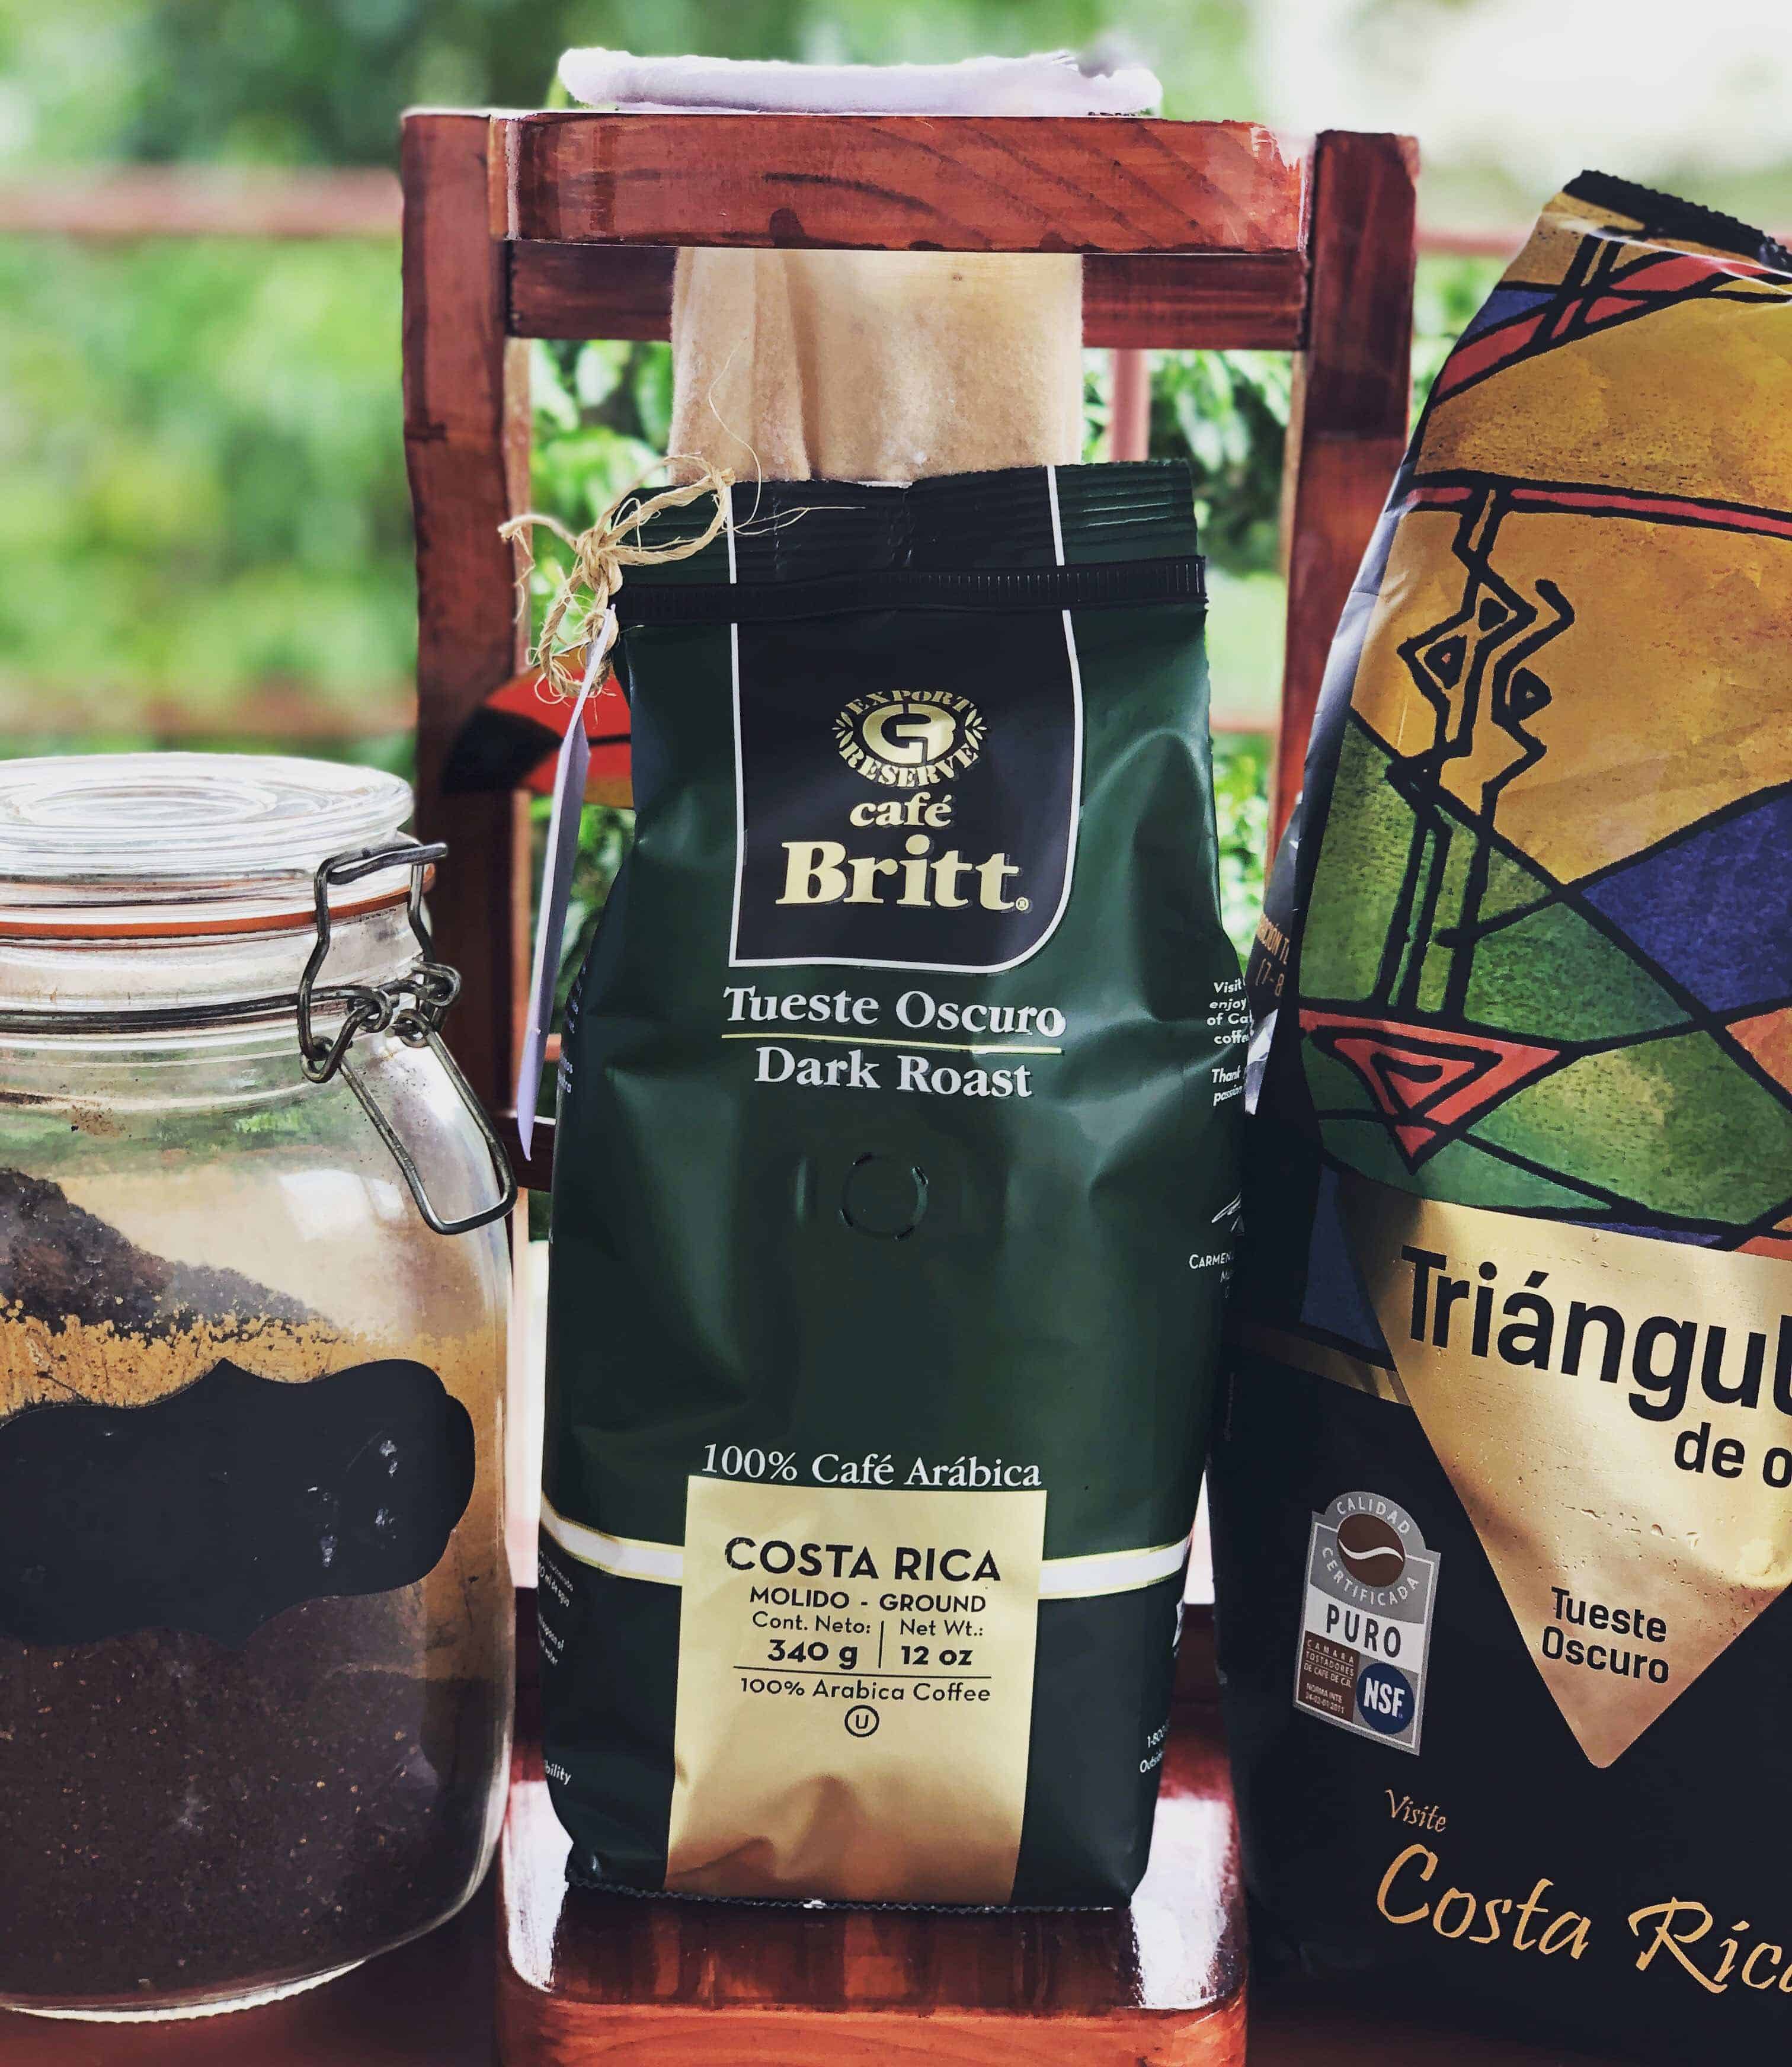 Costa Rican coffee